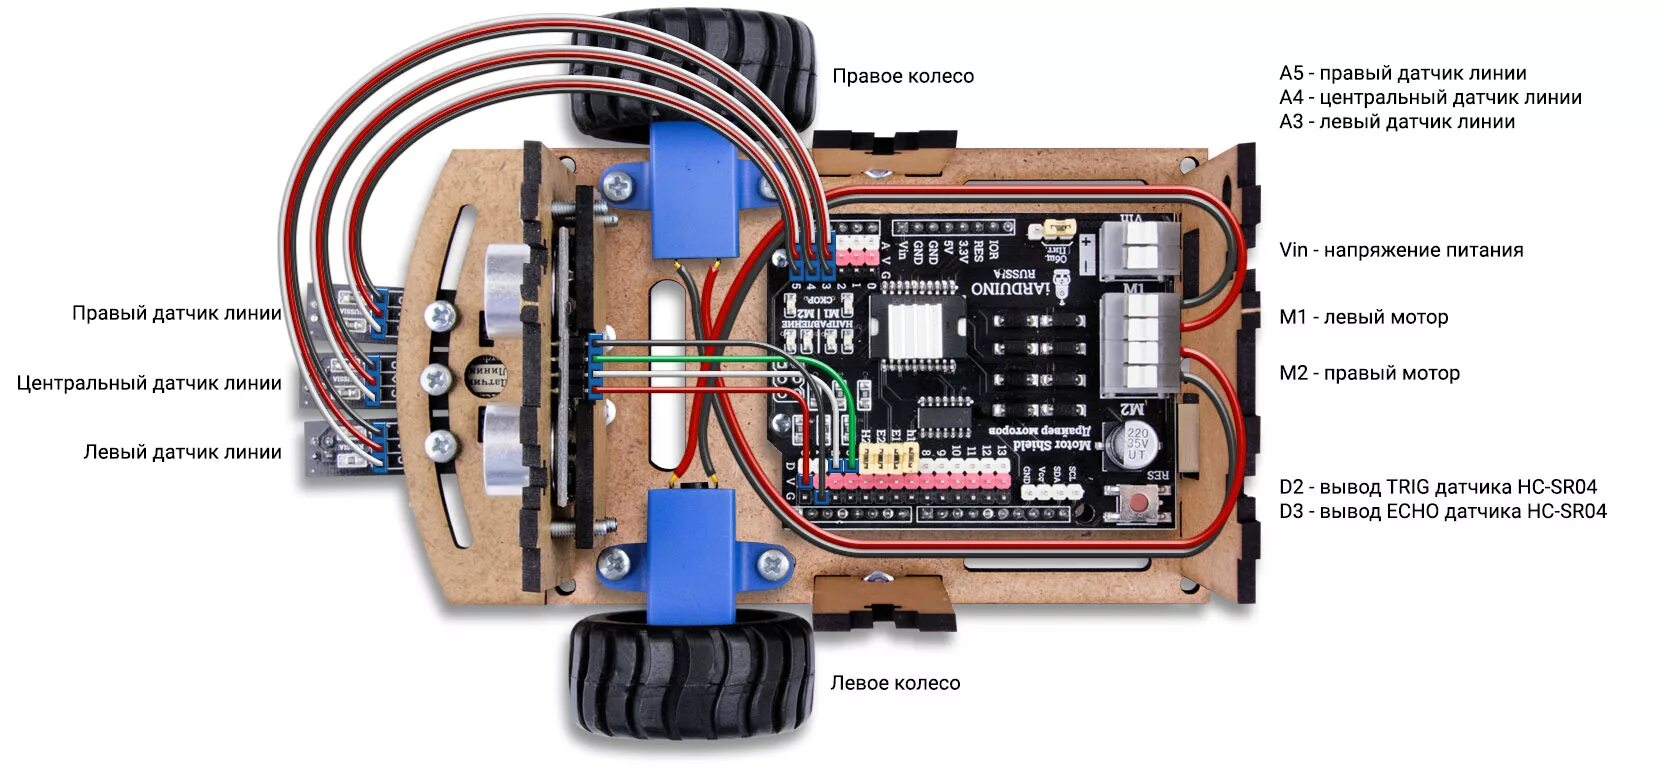 К каким портам подключаются моторы. Arduino uno робот. Машинка ардуино с датчиками линии. Ардуино шасси 2 колеса. Робот по линии на ардуино.